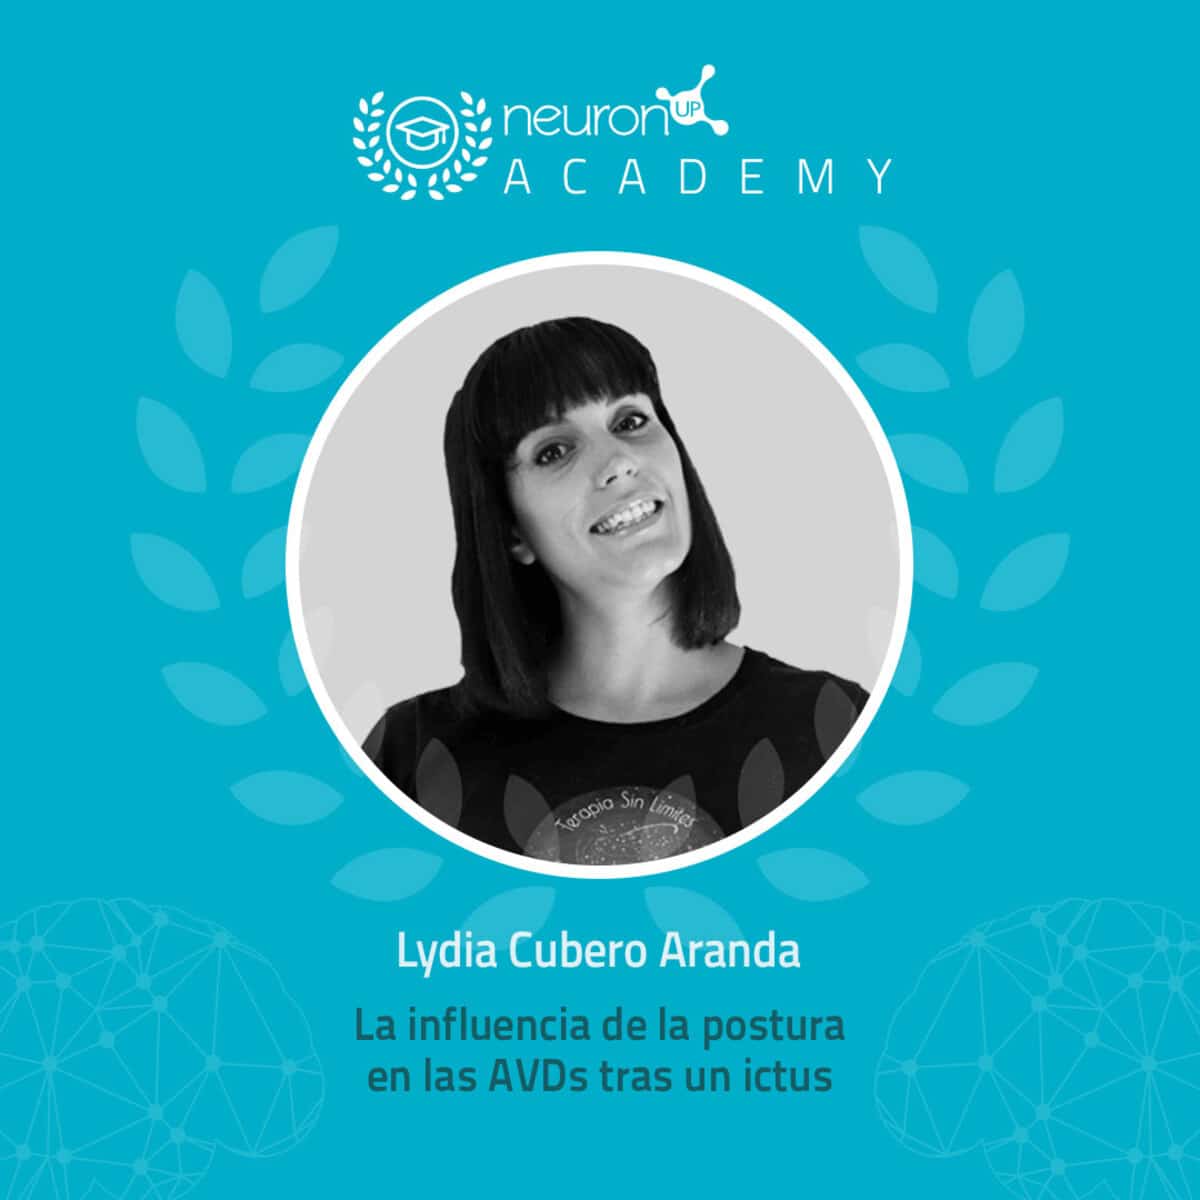 Lydia Cubero en NeuronUP Academy